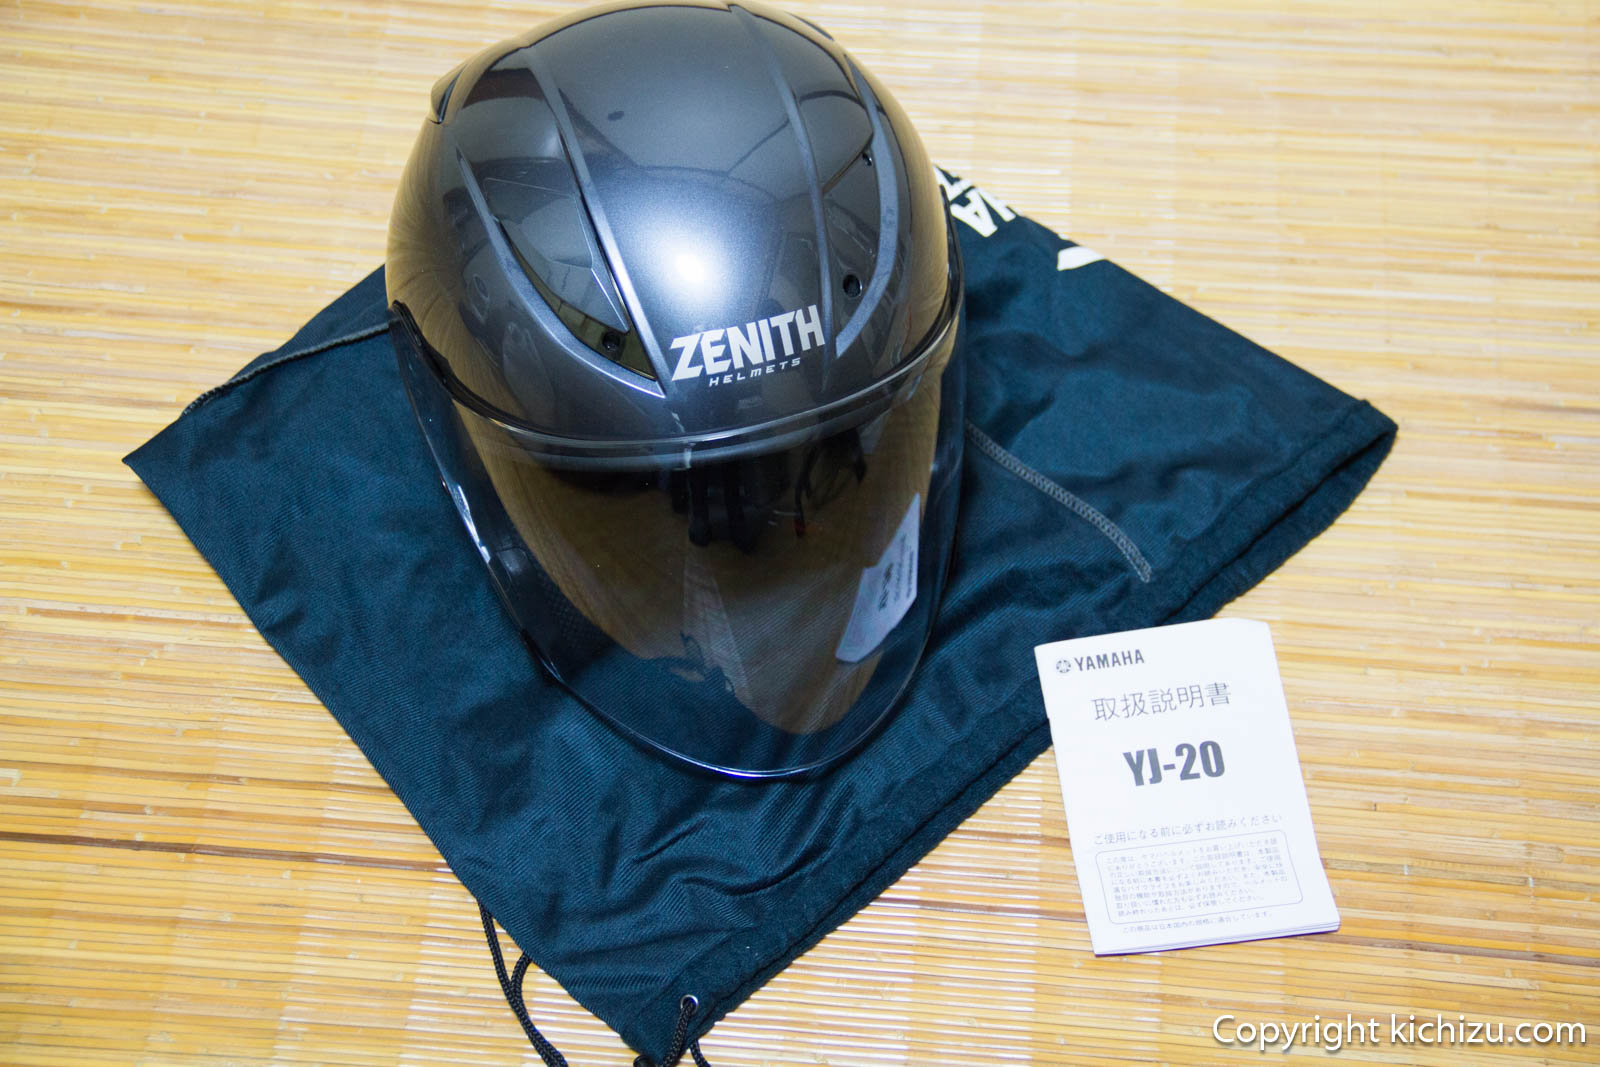 ヤマハ YJ-20 ZENITH ヘルメット購入レビュー | Kichzu's